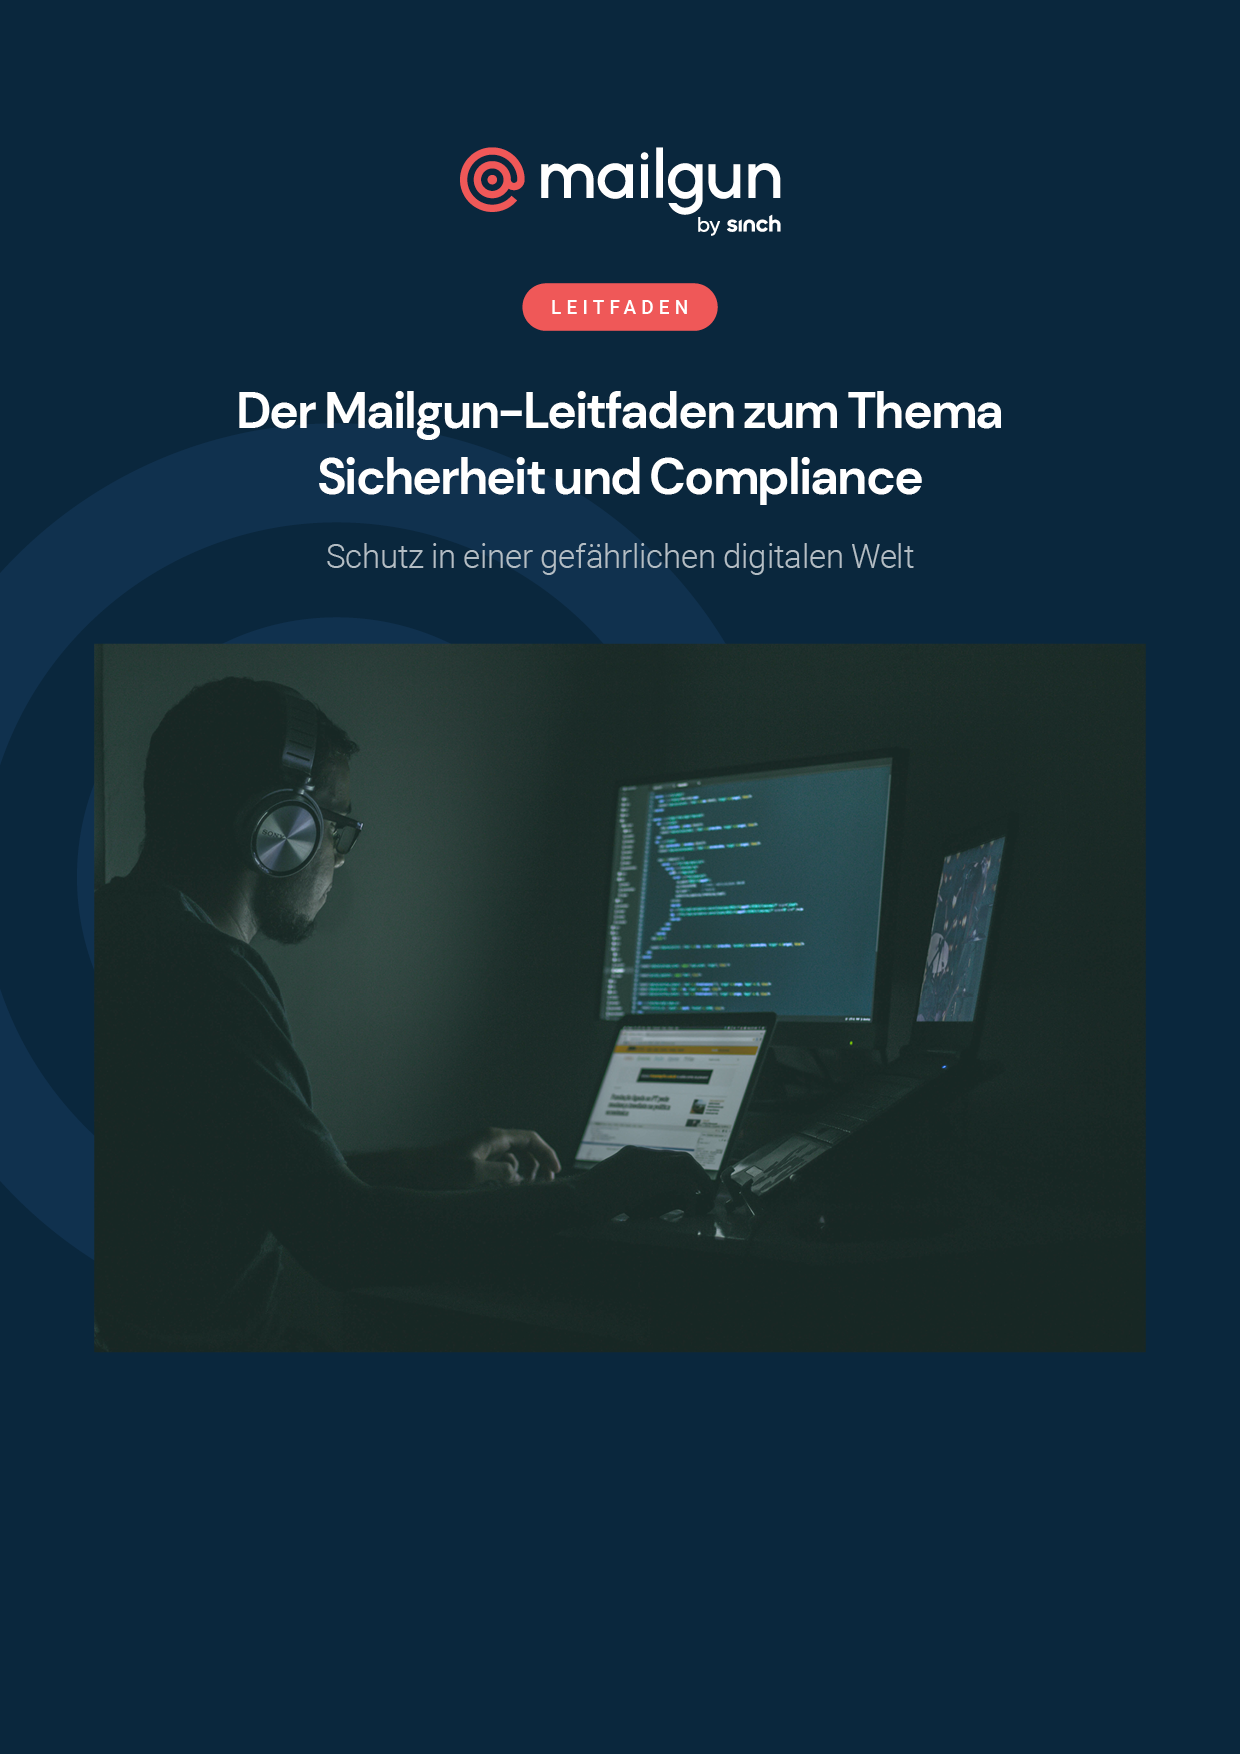 Vorschaubild des Covers von Mailguns Leitfaden für E-Mail-Sicherheit und Compliance